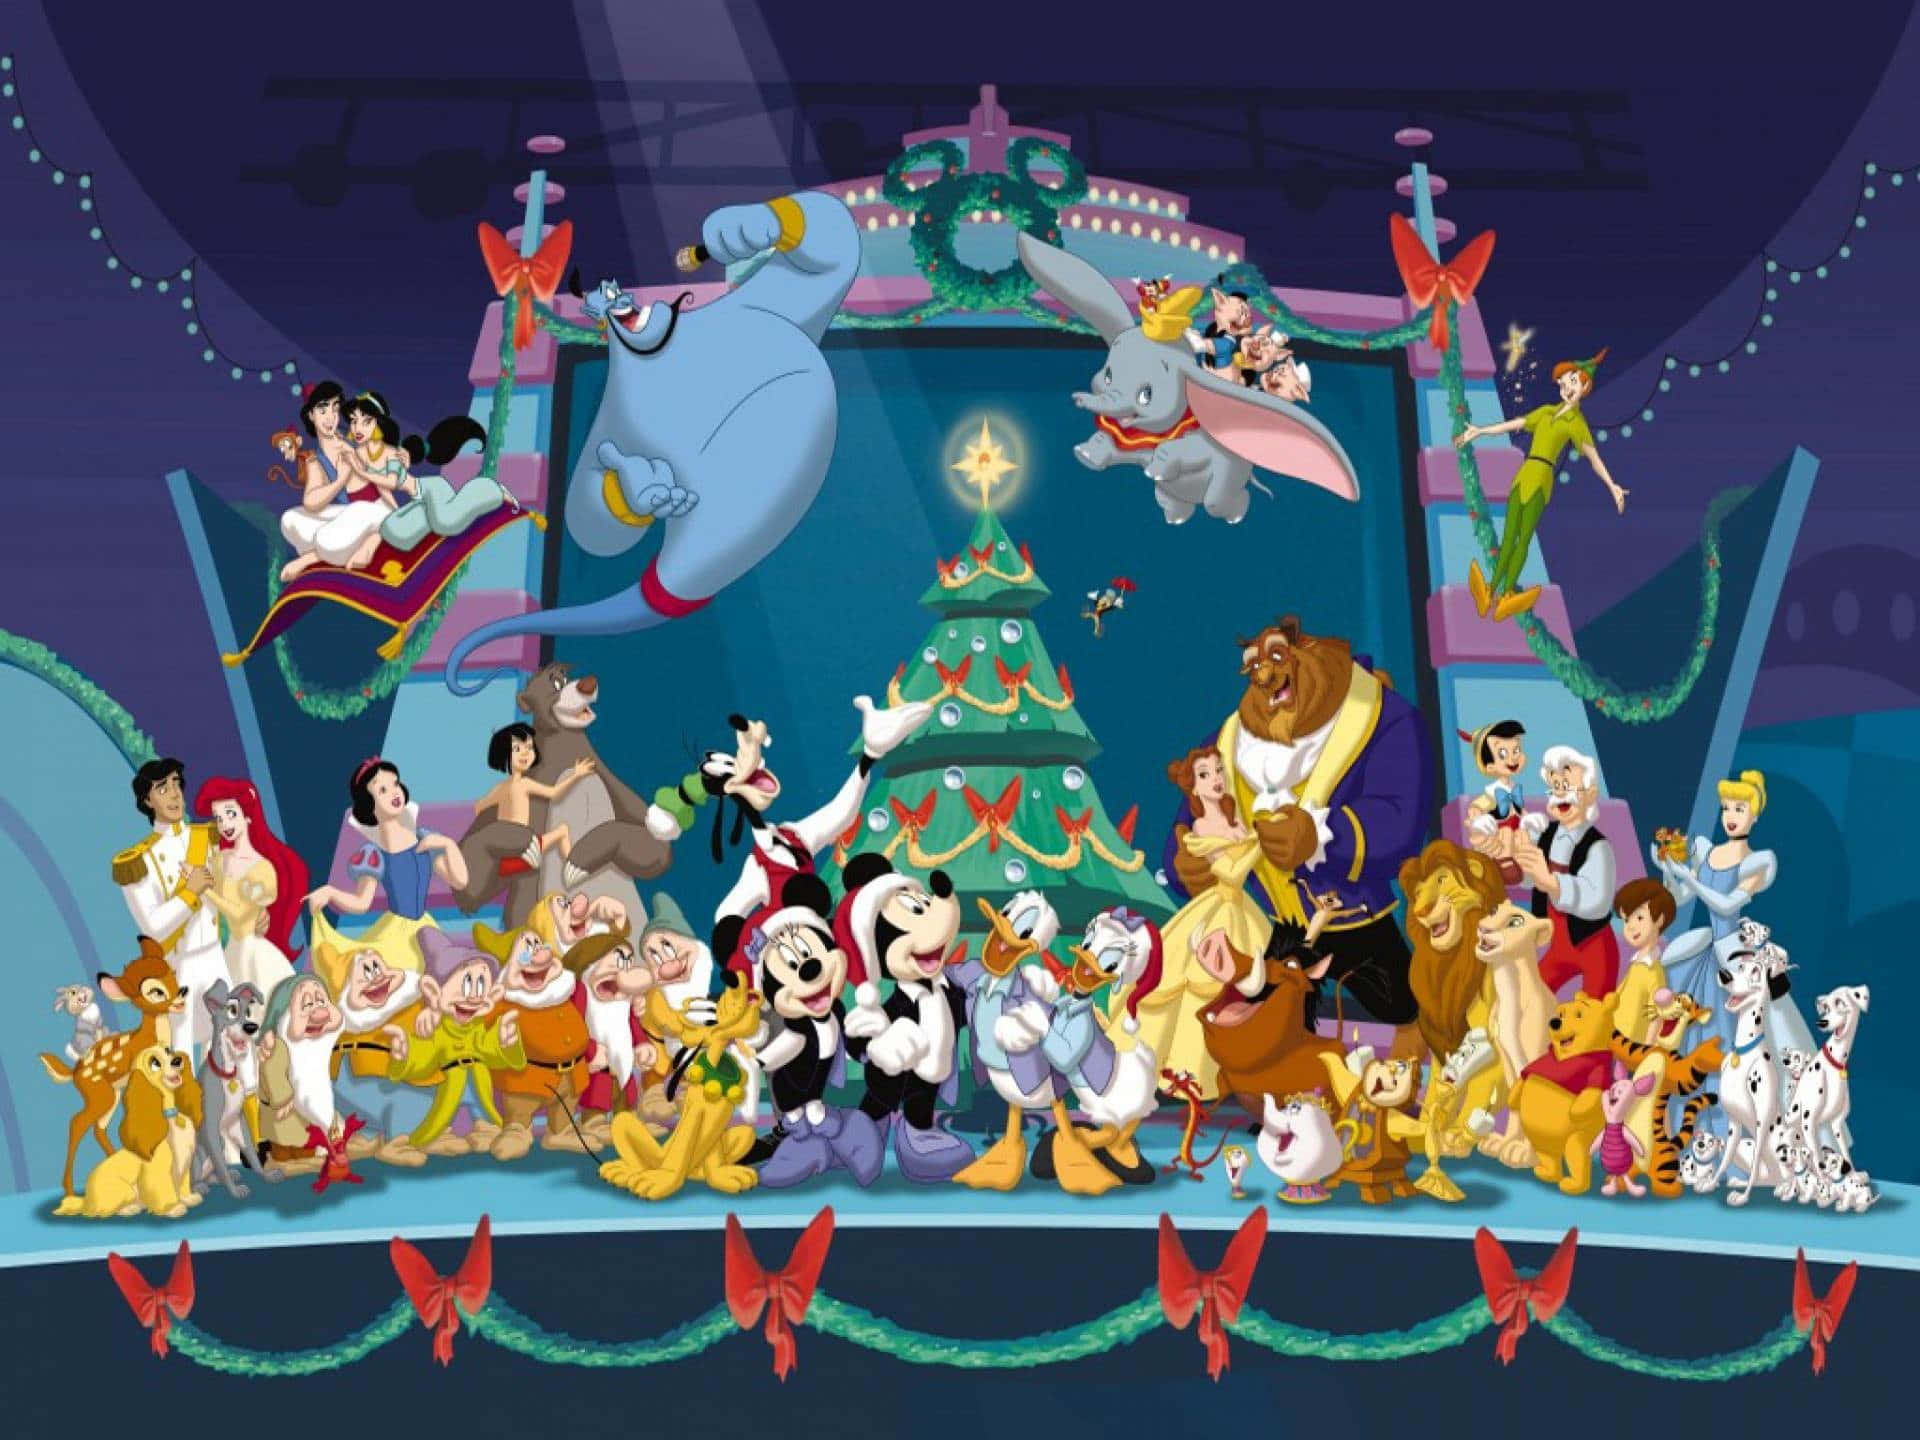 Bringensie Die Klassische Verspielte Welt Von Disney Mit Einem Weihnachtlich Gestalteten Ipad Zum Leben. Wallpaper